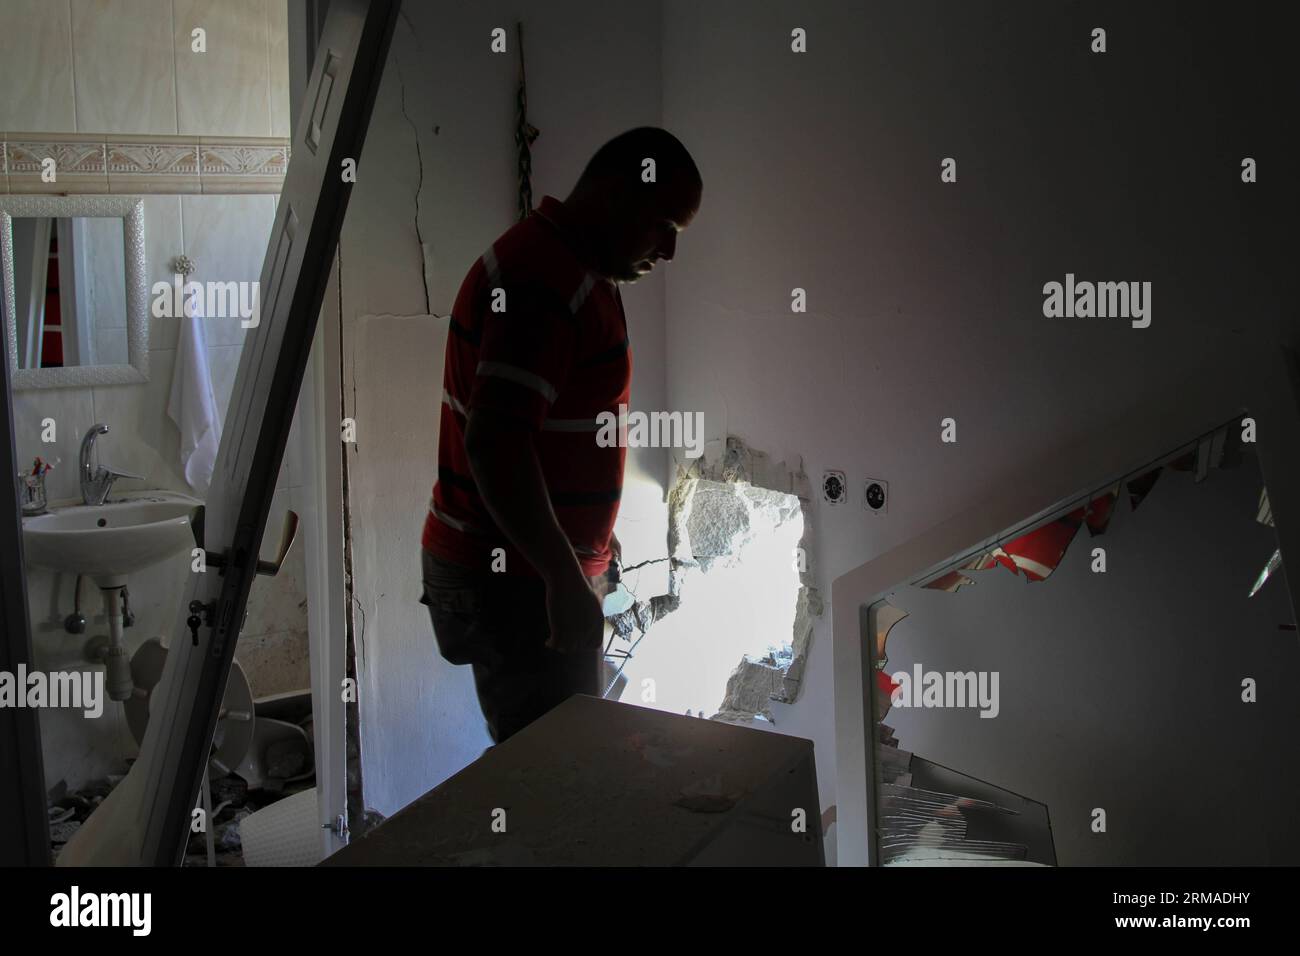 (140703) -- SDEROT (ISRAEL), 3. Juli 2014 (Xinhua) -- ein israelischer Mann inspiziert die Schäden eines Hauses nach einem Projektilangriff von Militanten aus Gaza in Sderot, Israel, am 3. Juli 2014. Früher am Donnerstag trafen drei Geschosse Wohngebäude in der israelischen Stadt Sderot, darunter eine Wohnung, die als private Kindergarten dient. Raketen, die über Nacht abgefeuert wurden, schlugen in einigen Teilen der Stadt den Strom aus. Die meisten anderen Geschosse, die am Donnerstag abgefeuert wurden, trafen offene Bereiche und verursachten keine Verletzungen. Zwei Raketen wurden vom israelischen Verteidigungssystem Iron Dome abgefangen und einige fielen kurz Stockfoto